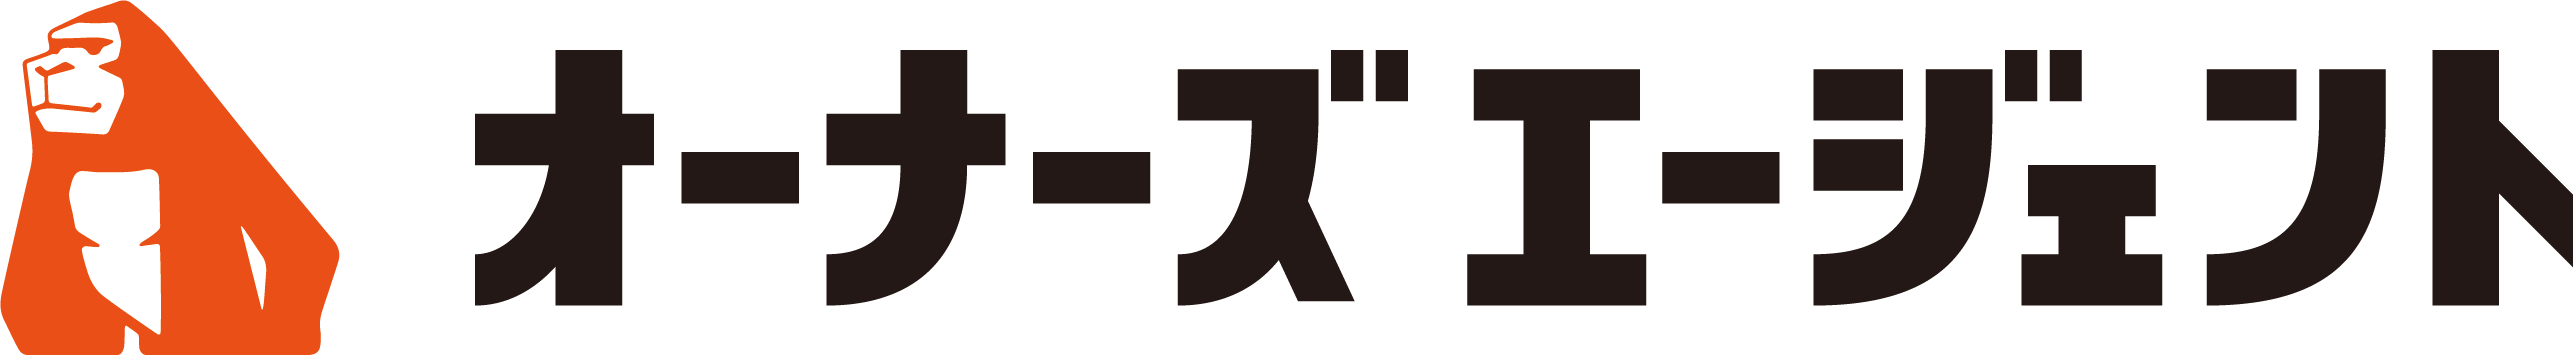 OA_logo